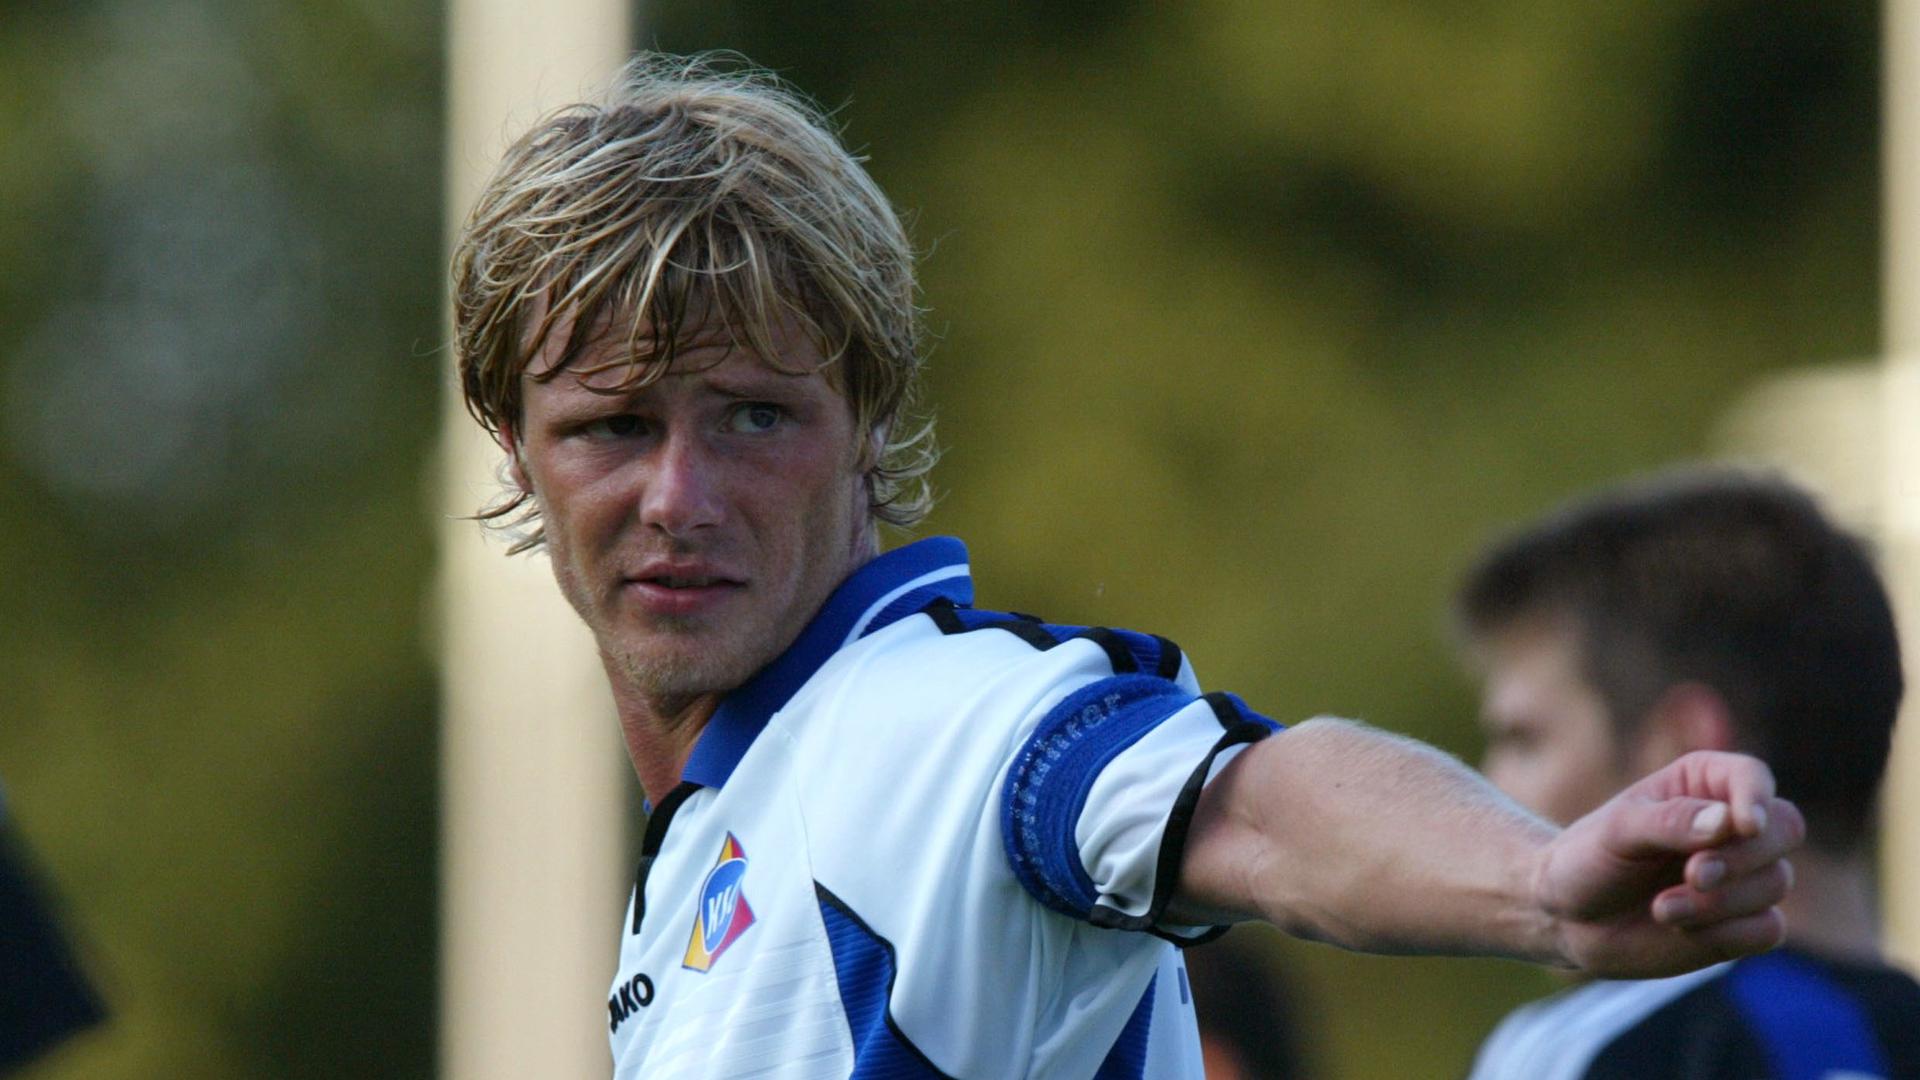 Kapitän mit 22: Marco Engelhardt im KSC-Trikot während eines Saisonvorbereitungsspiels am 15. Juli 2003 gegen den FC Brügge. 